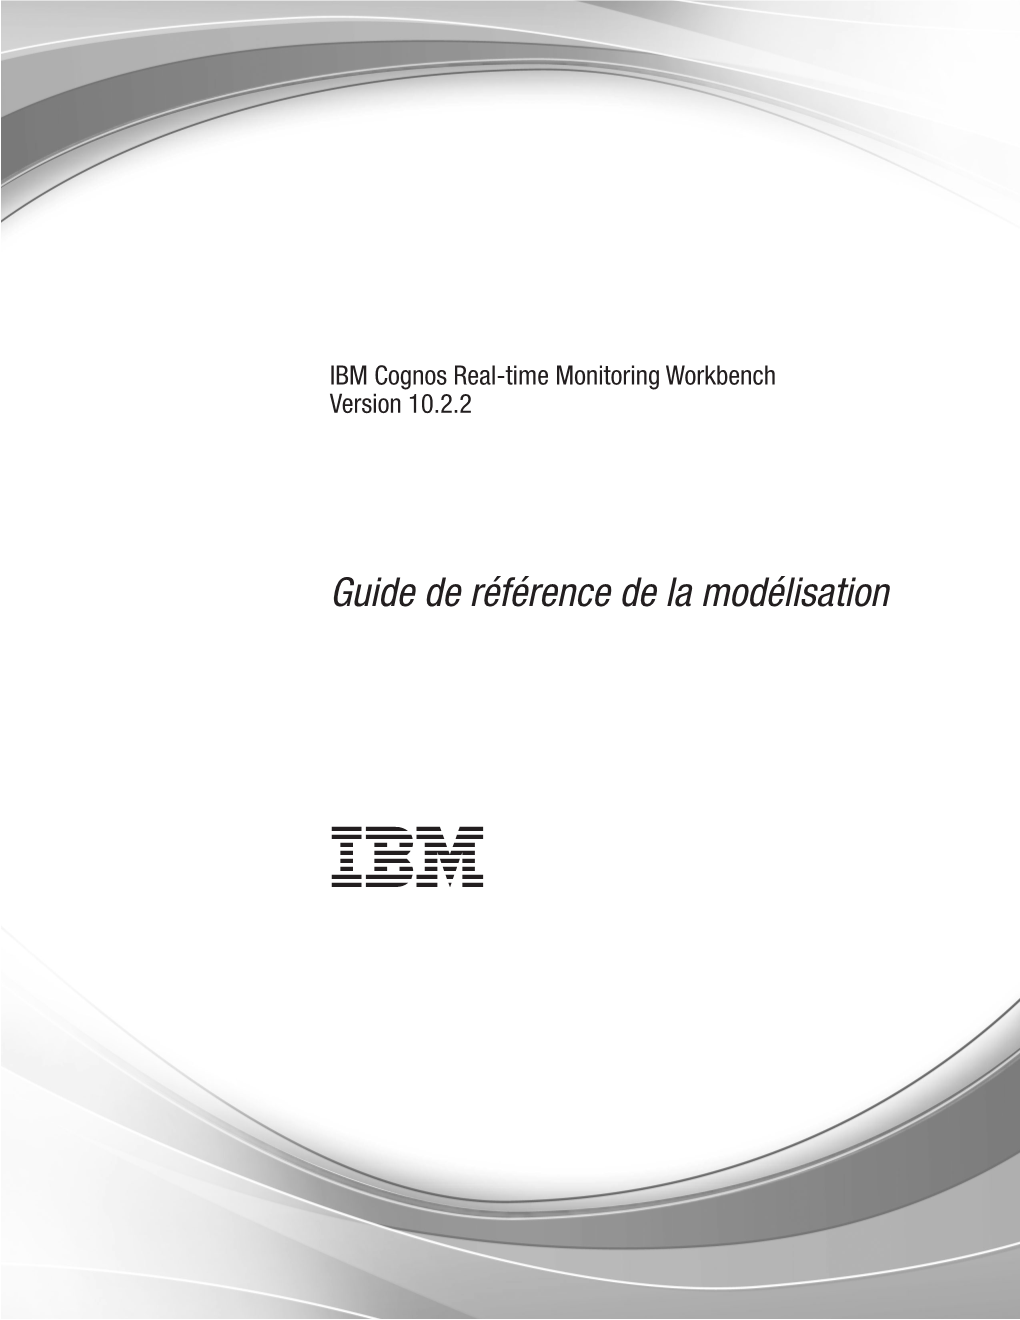 IBM Cognos Real-Time Monitoring Workbench Version 10.2.2